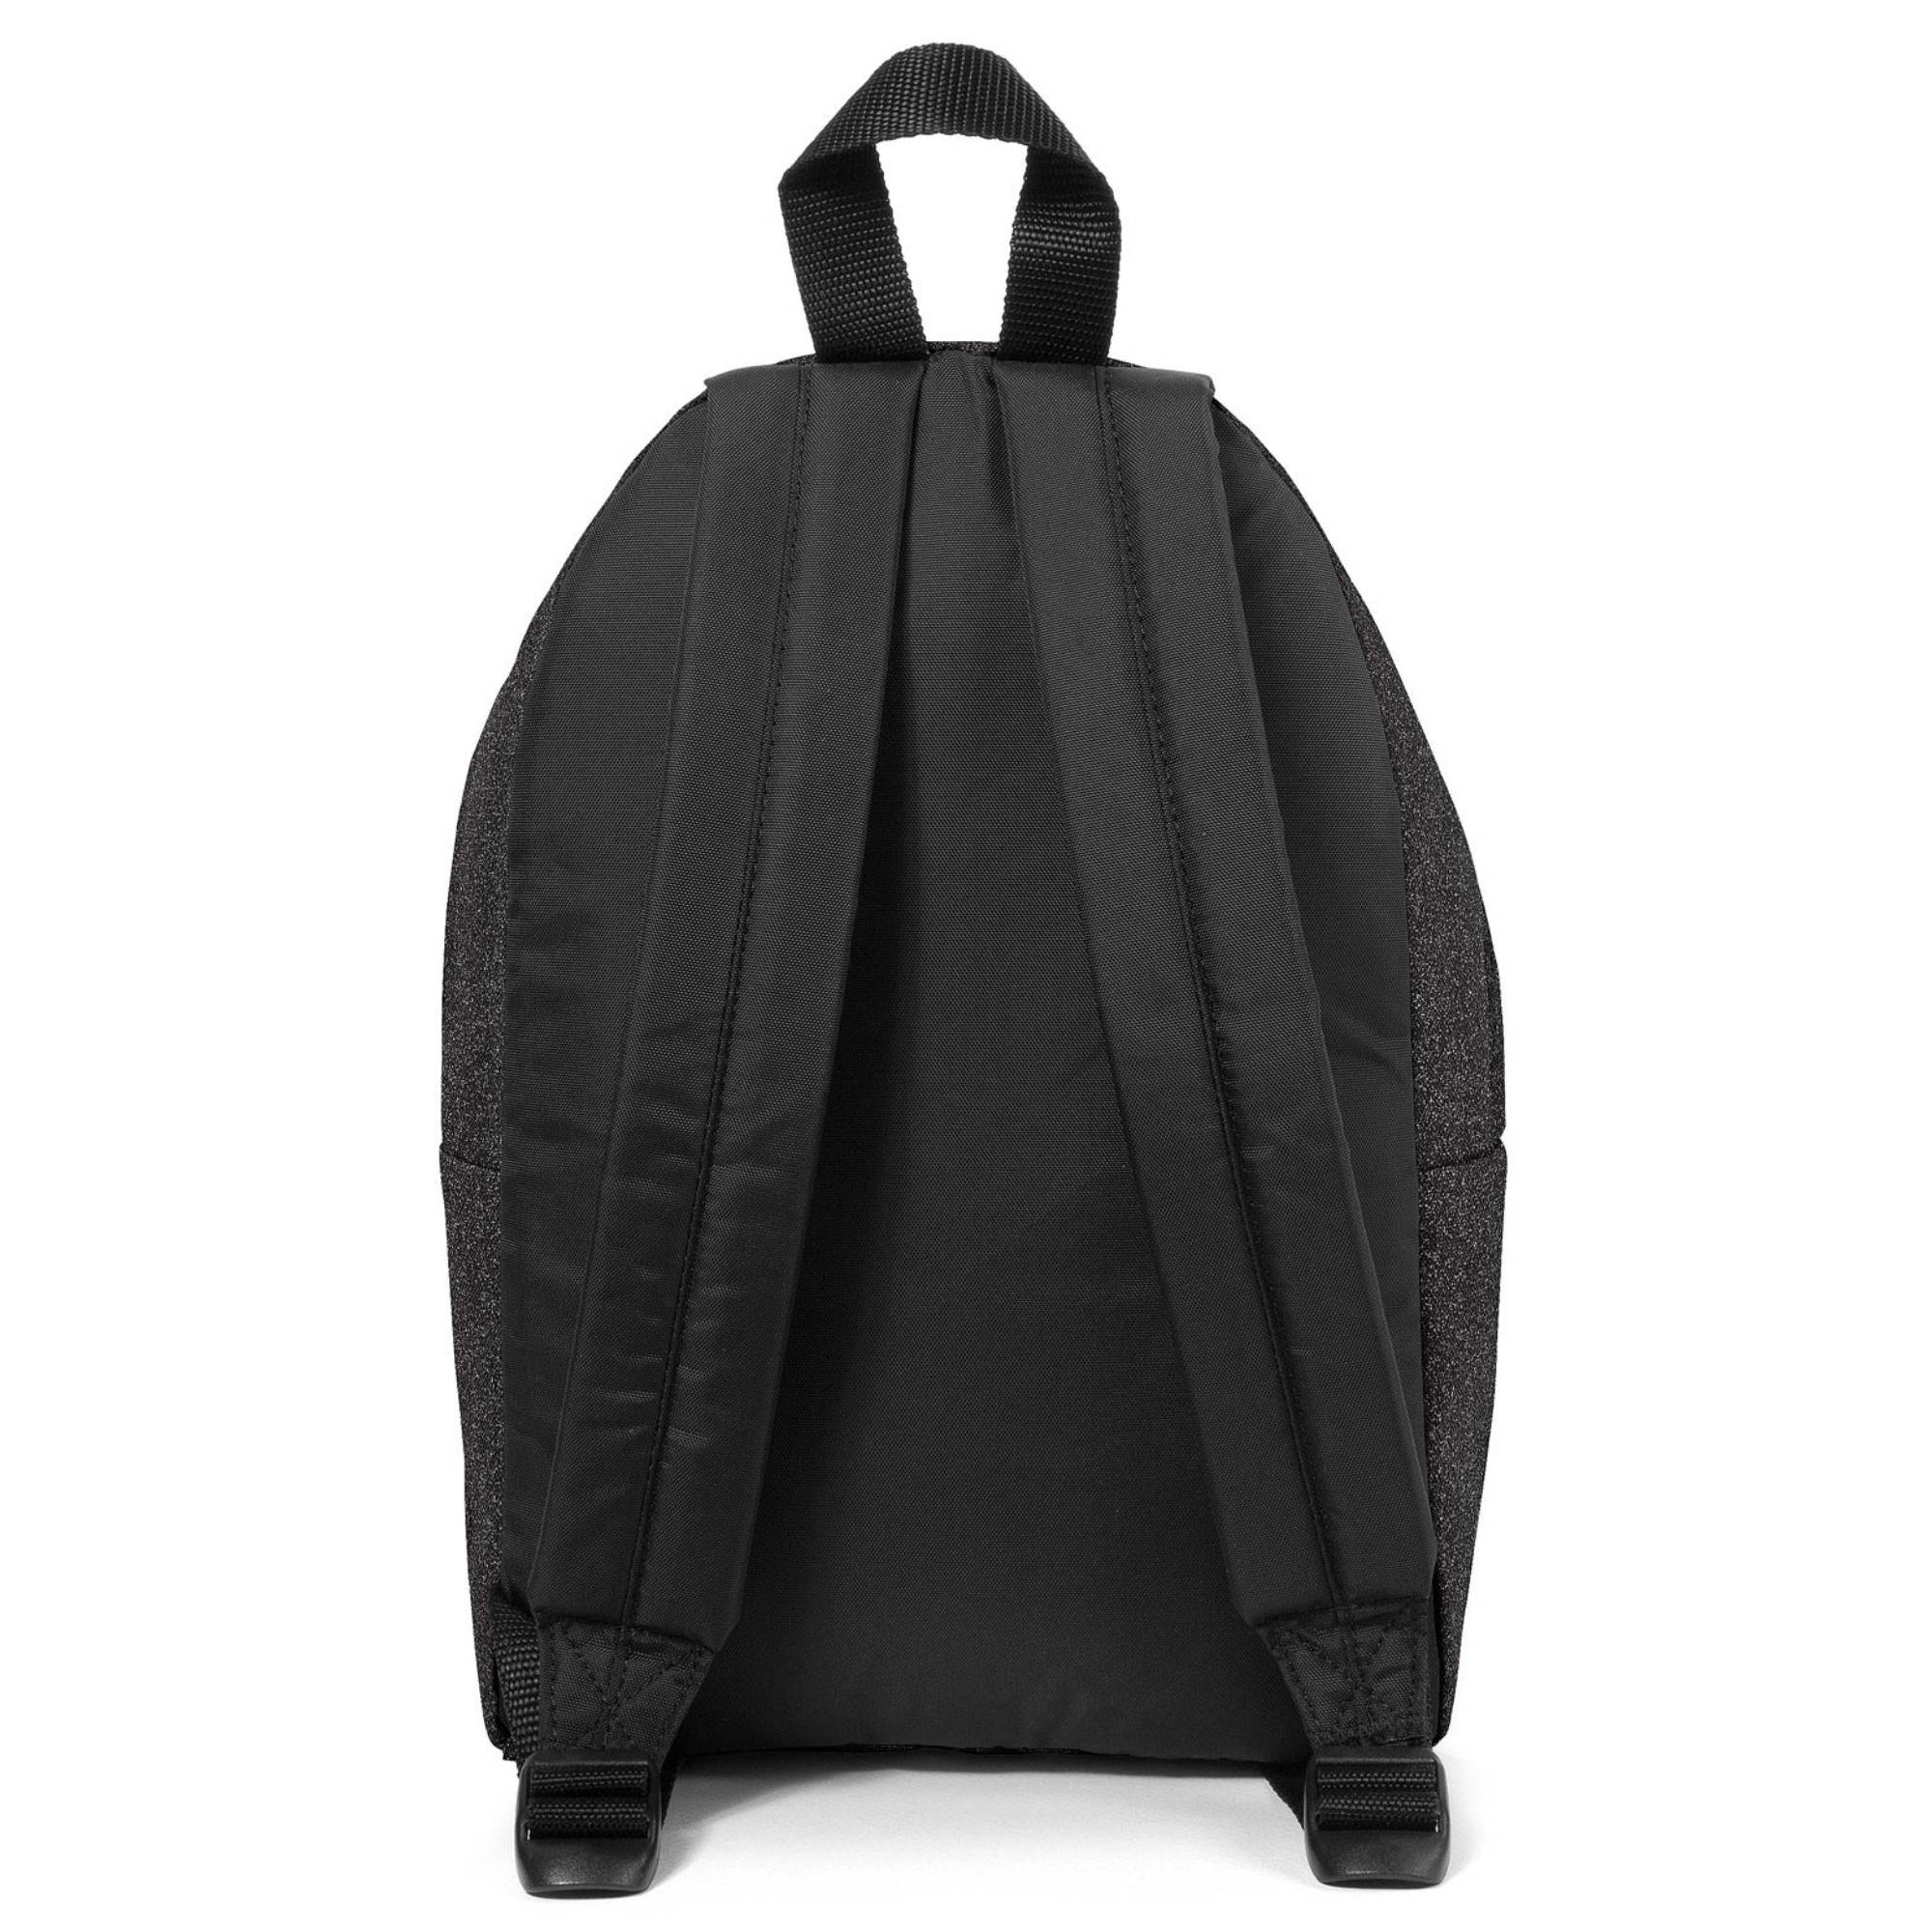 Petit sac à dos Eastpak Orbit XS K043-N98 couleur Spark Black vue de dos